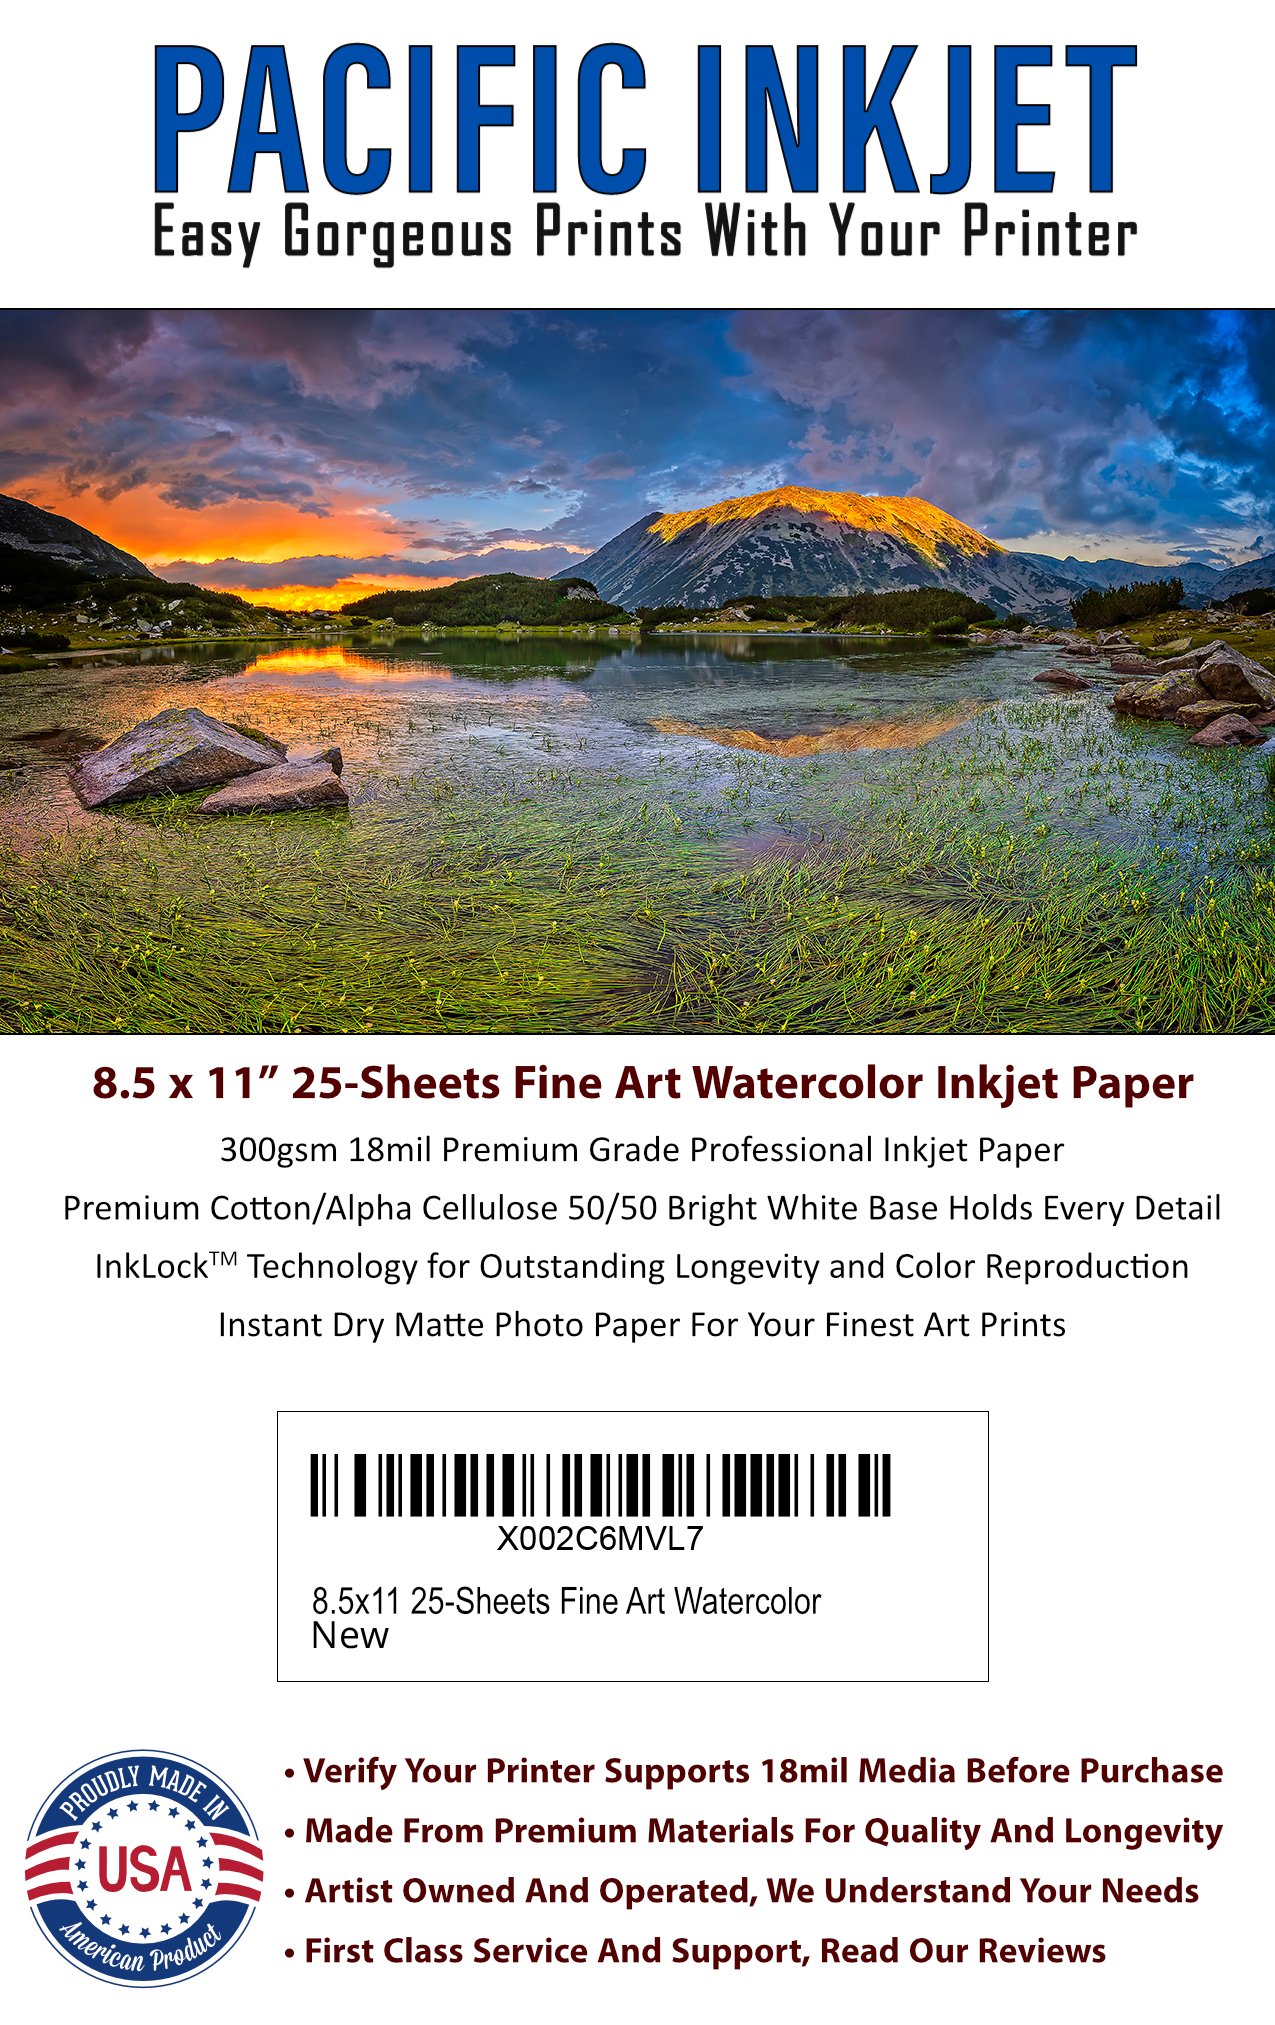 EACH - INKJET WATERCOLOR PAPER 8.5X11